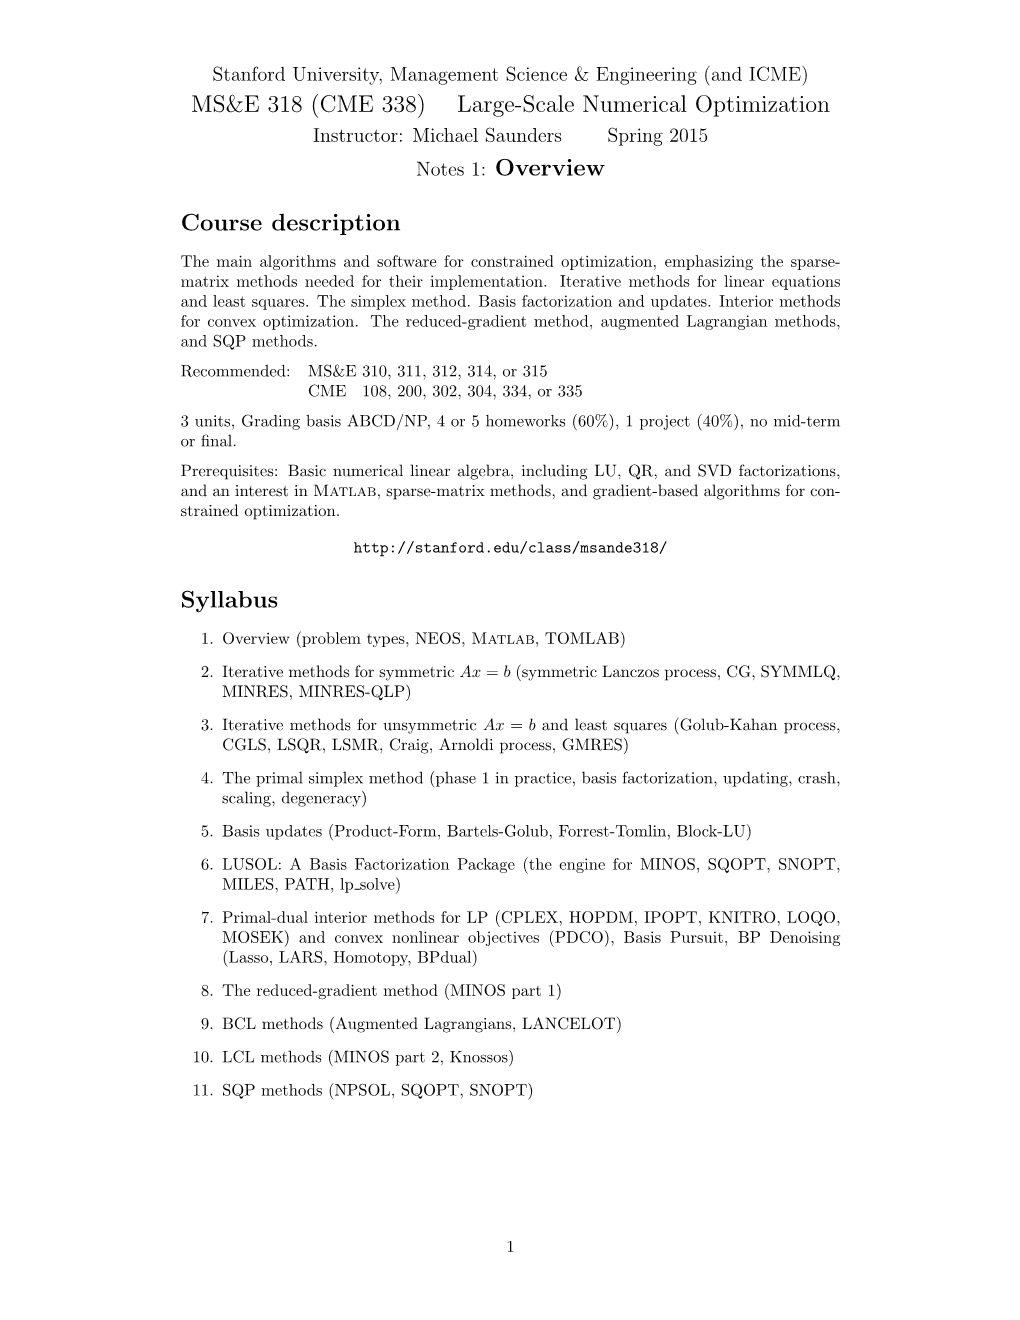 MS&E 318 (CME 338) Large-Scale Numerical Optimization Course Description Syllabus